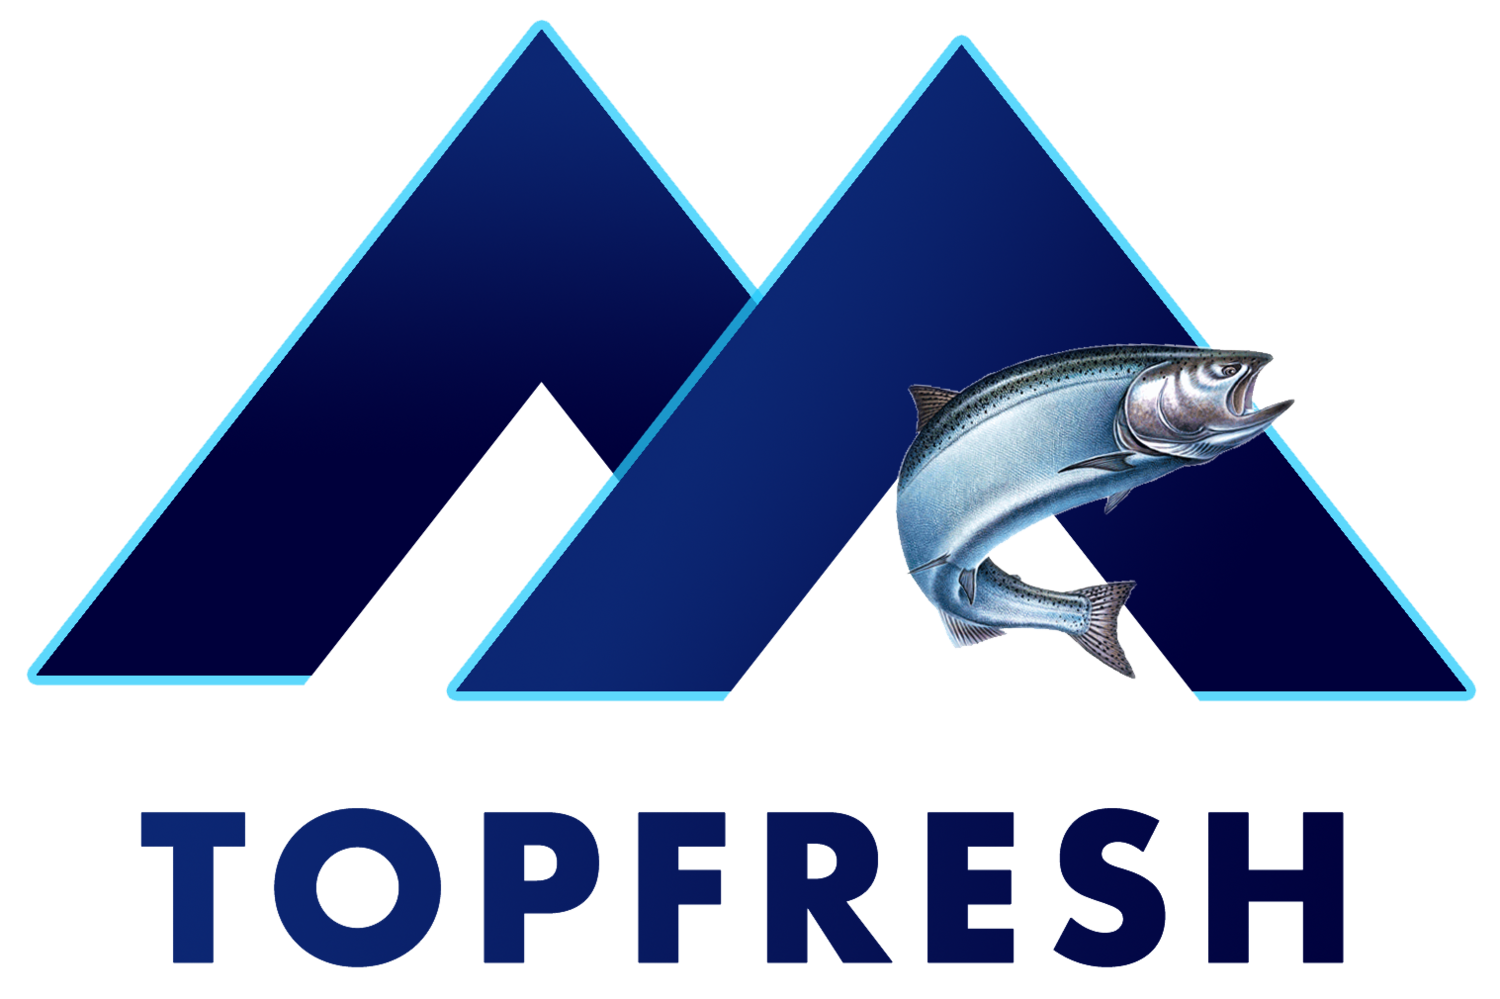 TopFresh Fish